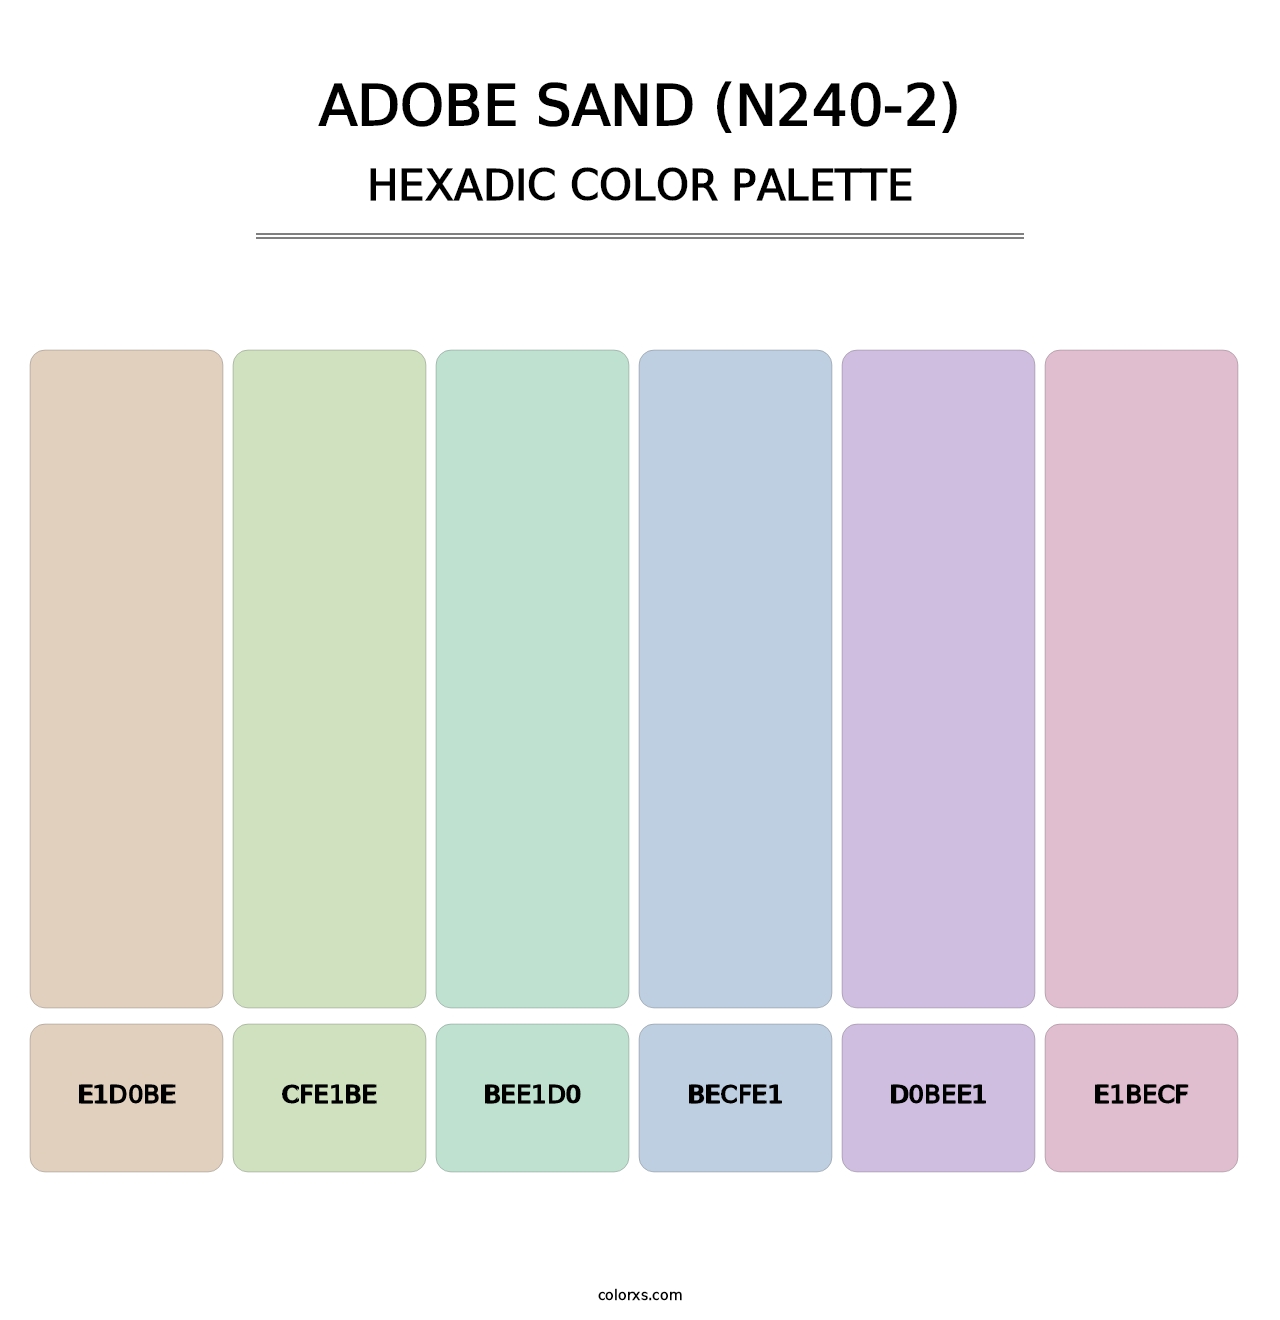 Adobe Sand (N240-2) - Hexadic Color Palette